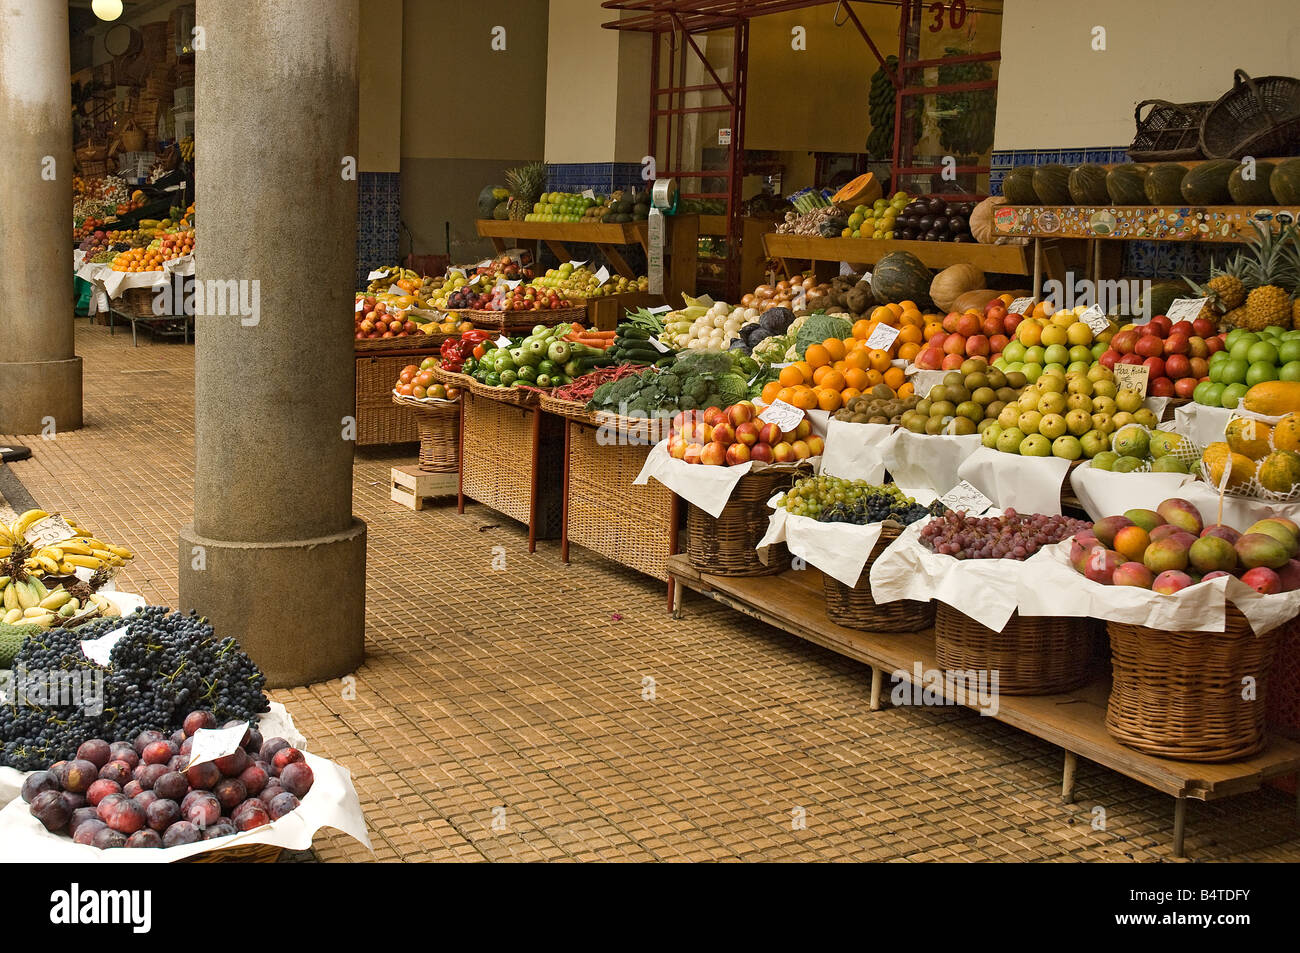 Verdura Surtido De Verduras Frescas En La Tabla De Roble Vieja Rústica  Verdura Del Mercado Foto de archivo - Imagen de agricultura, fruta: 93866150